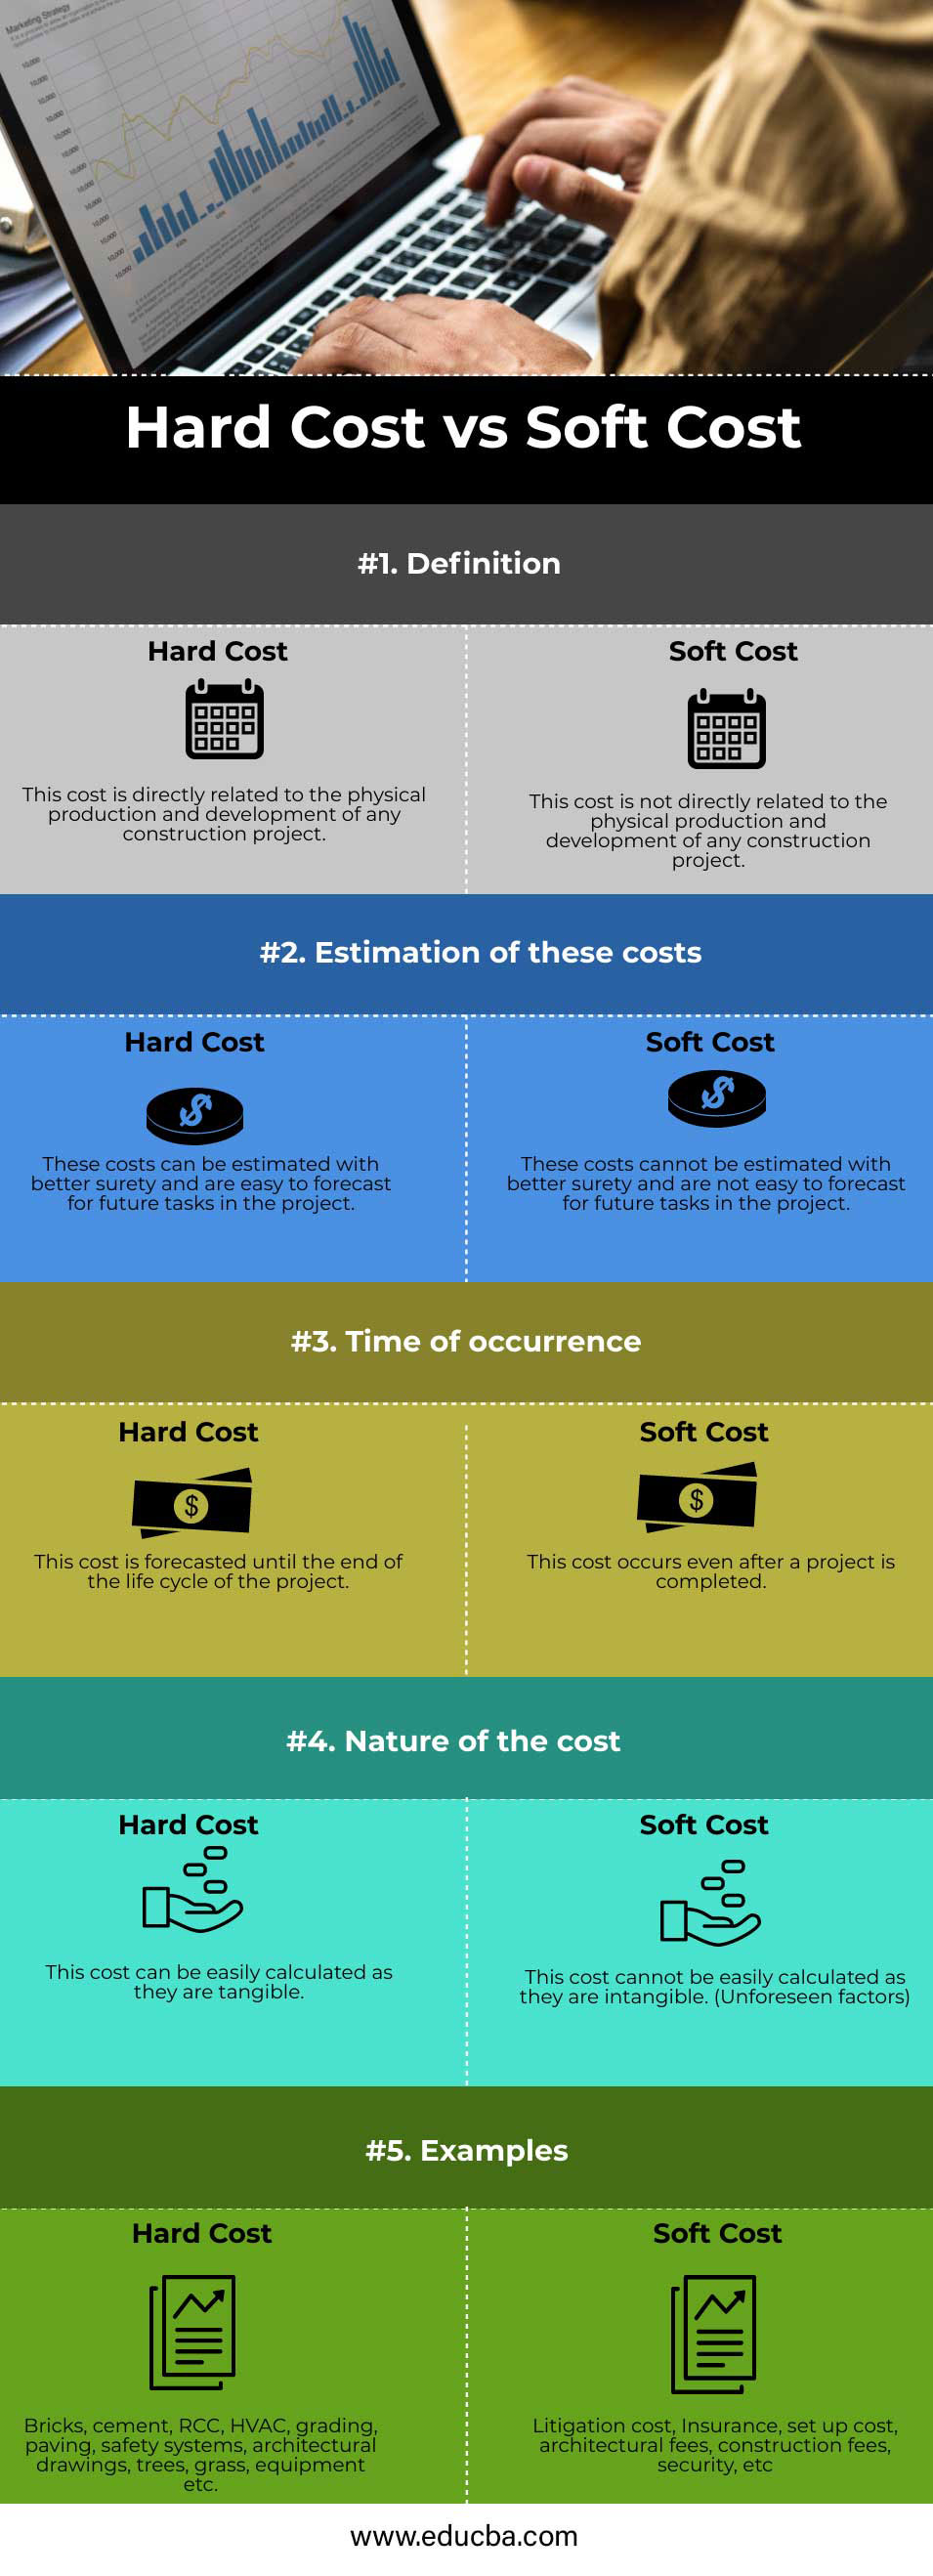 Costos duros versus costos blandos